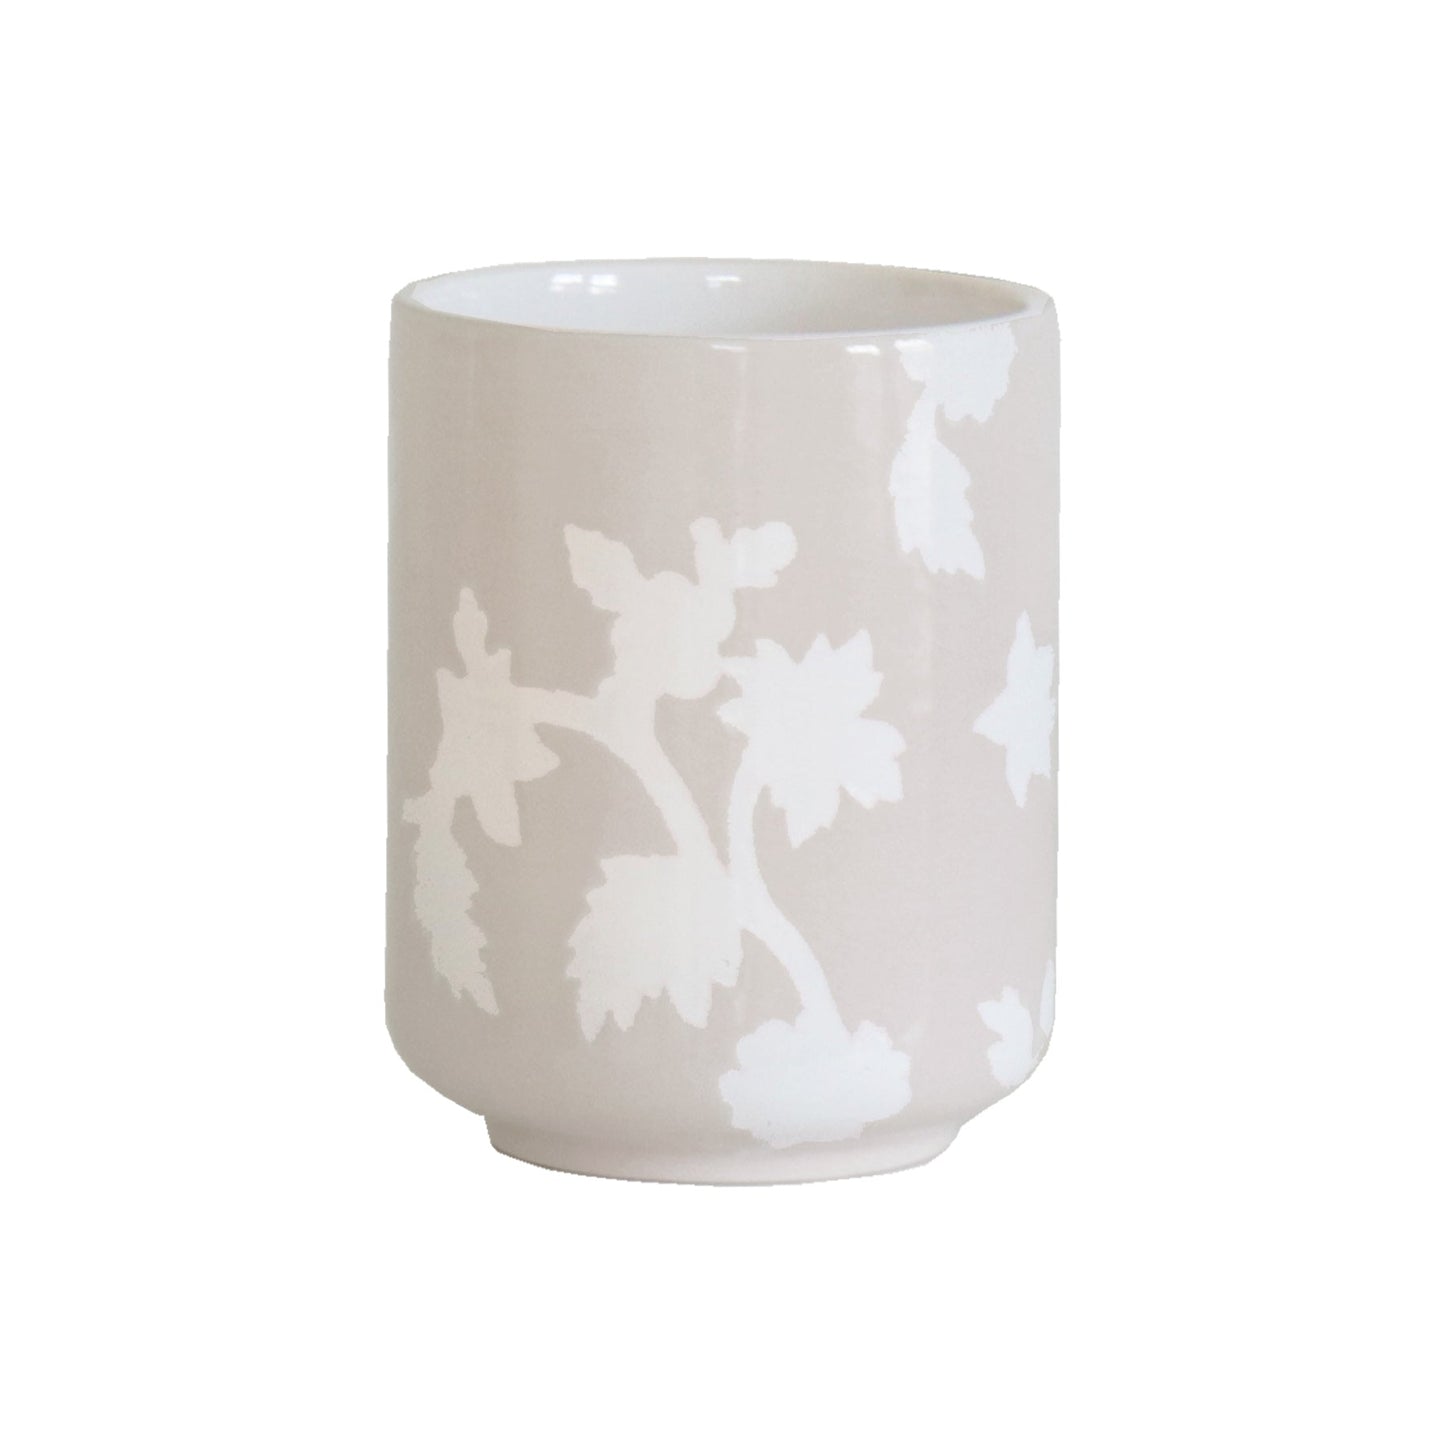 Chinoiserie Dreams Large Vase/ Utensil Holder | Wholesale